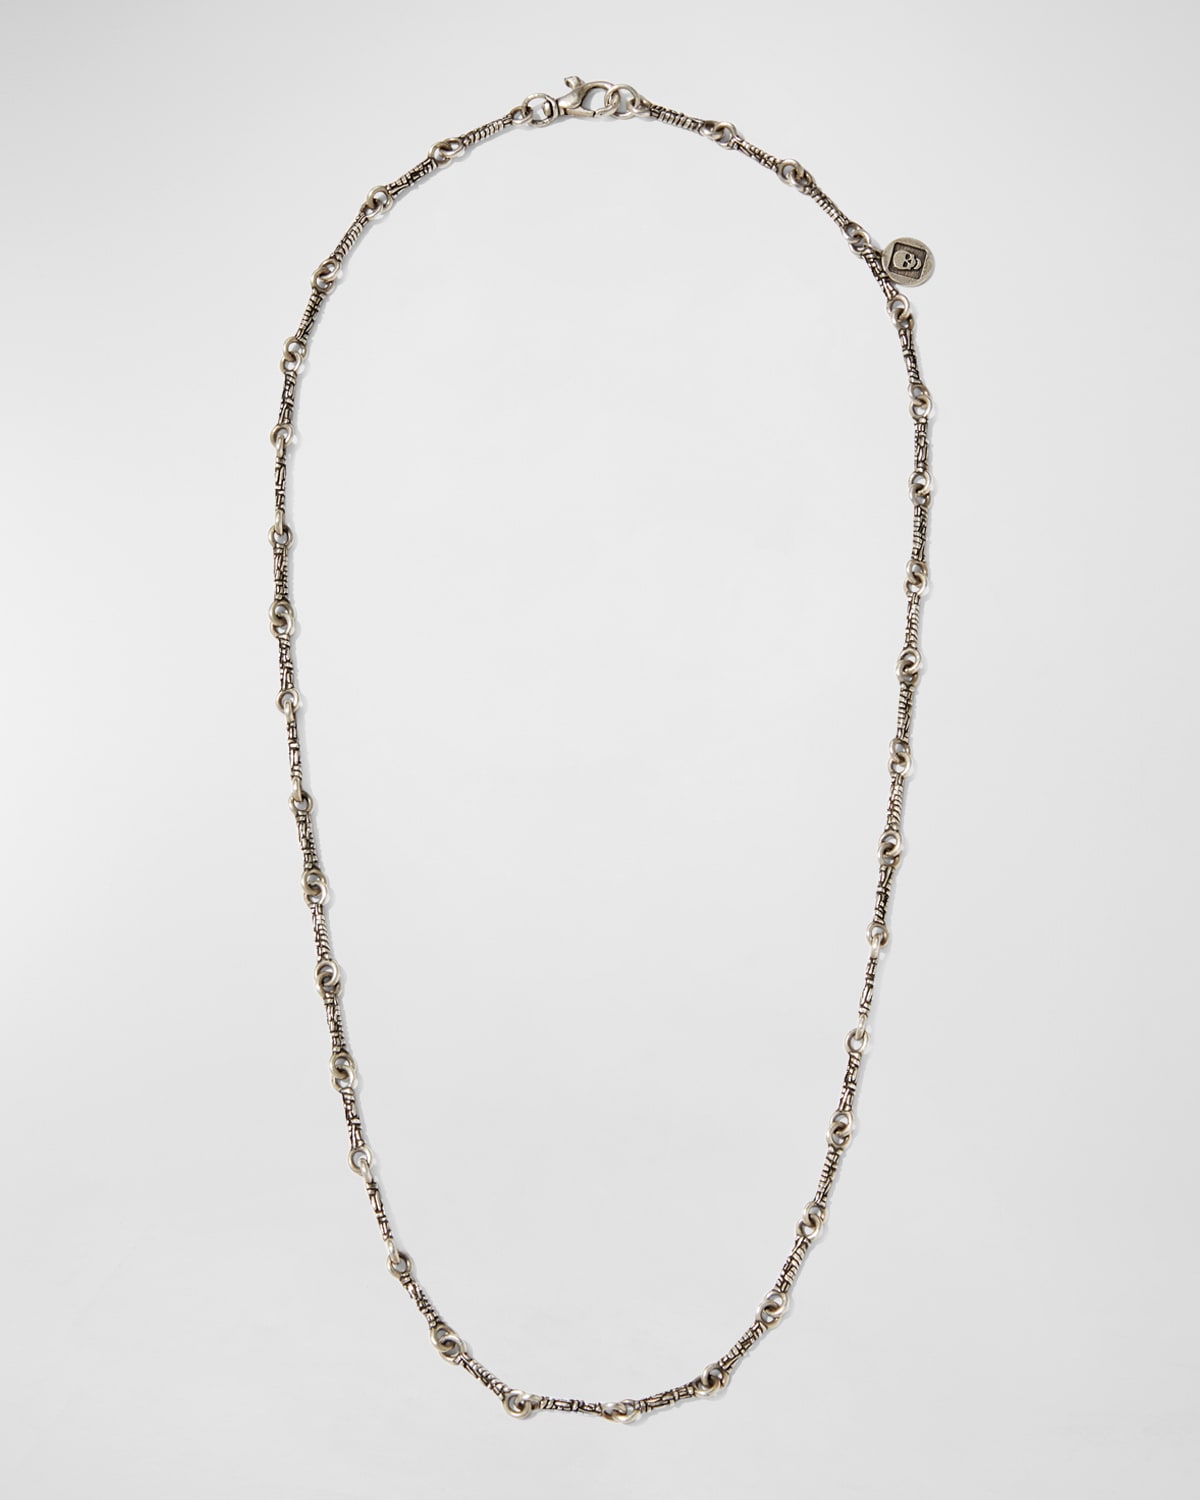 Men's Artisan Woven Texture Chain Necklace, 24"L